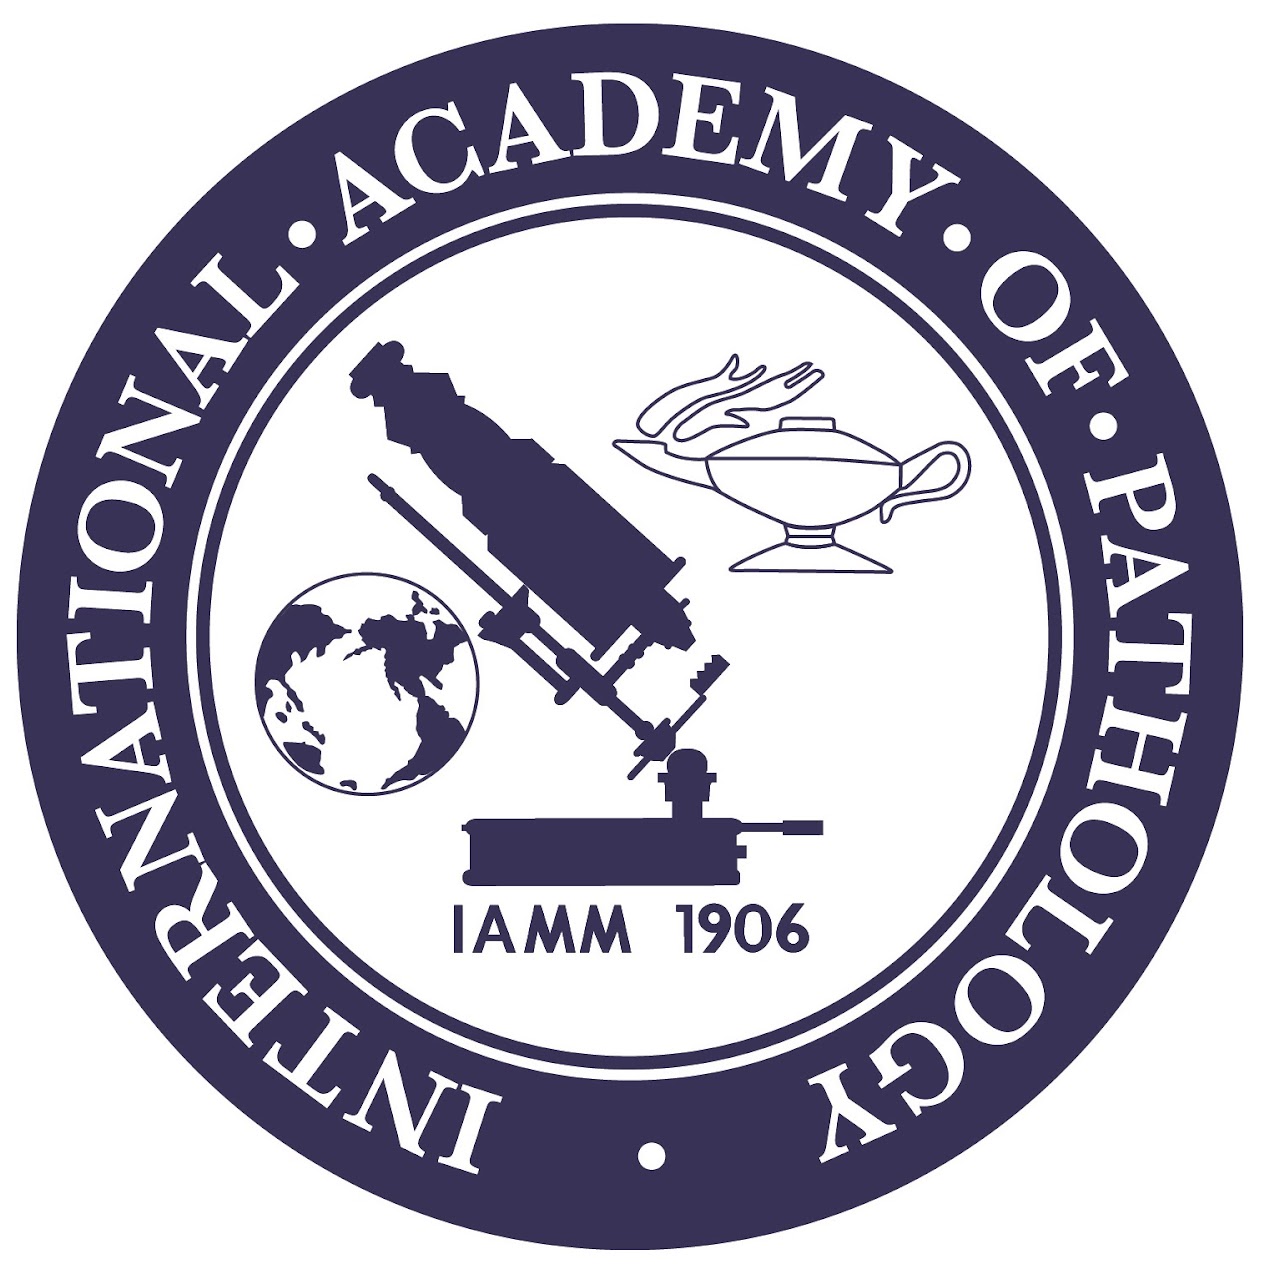 Internation Academy of Pathology